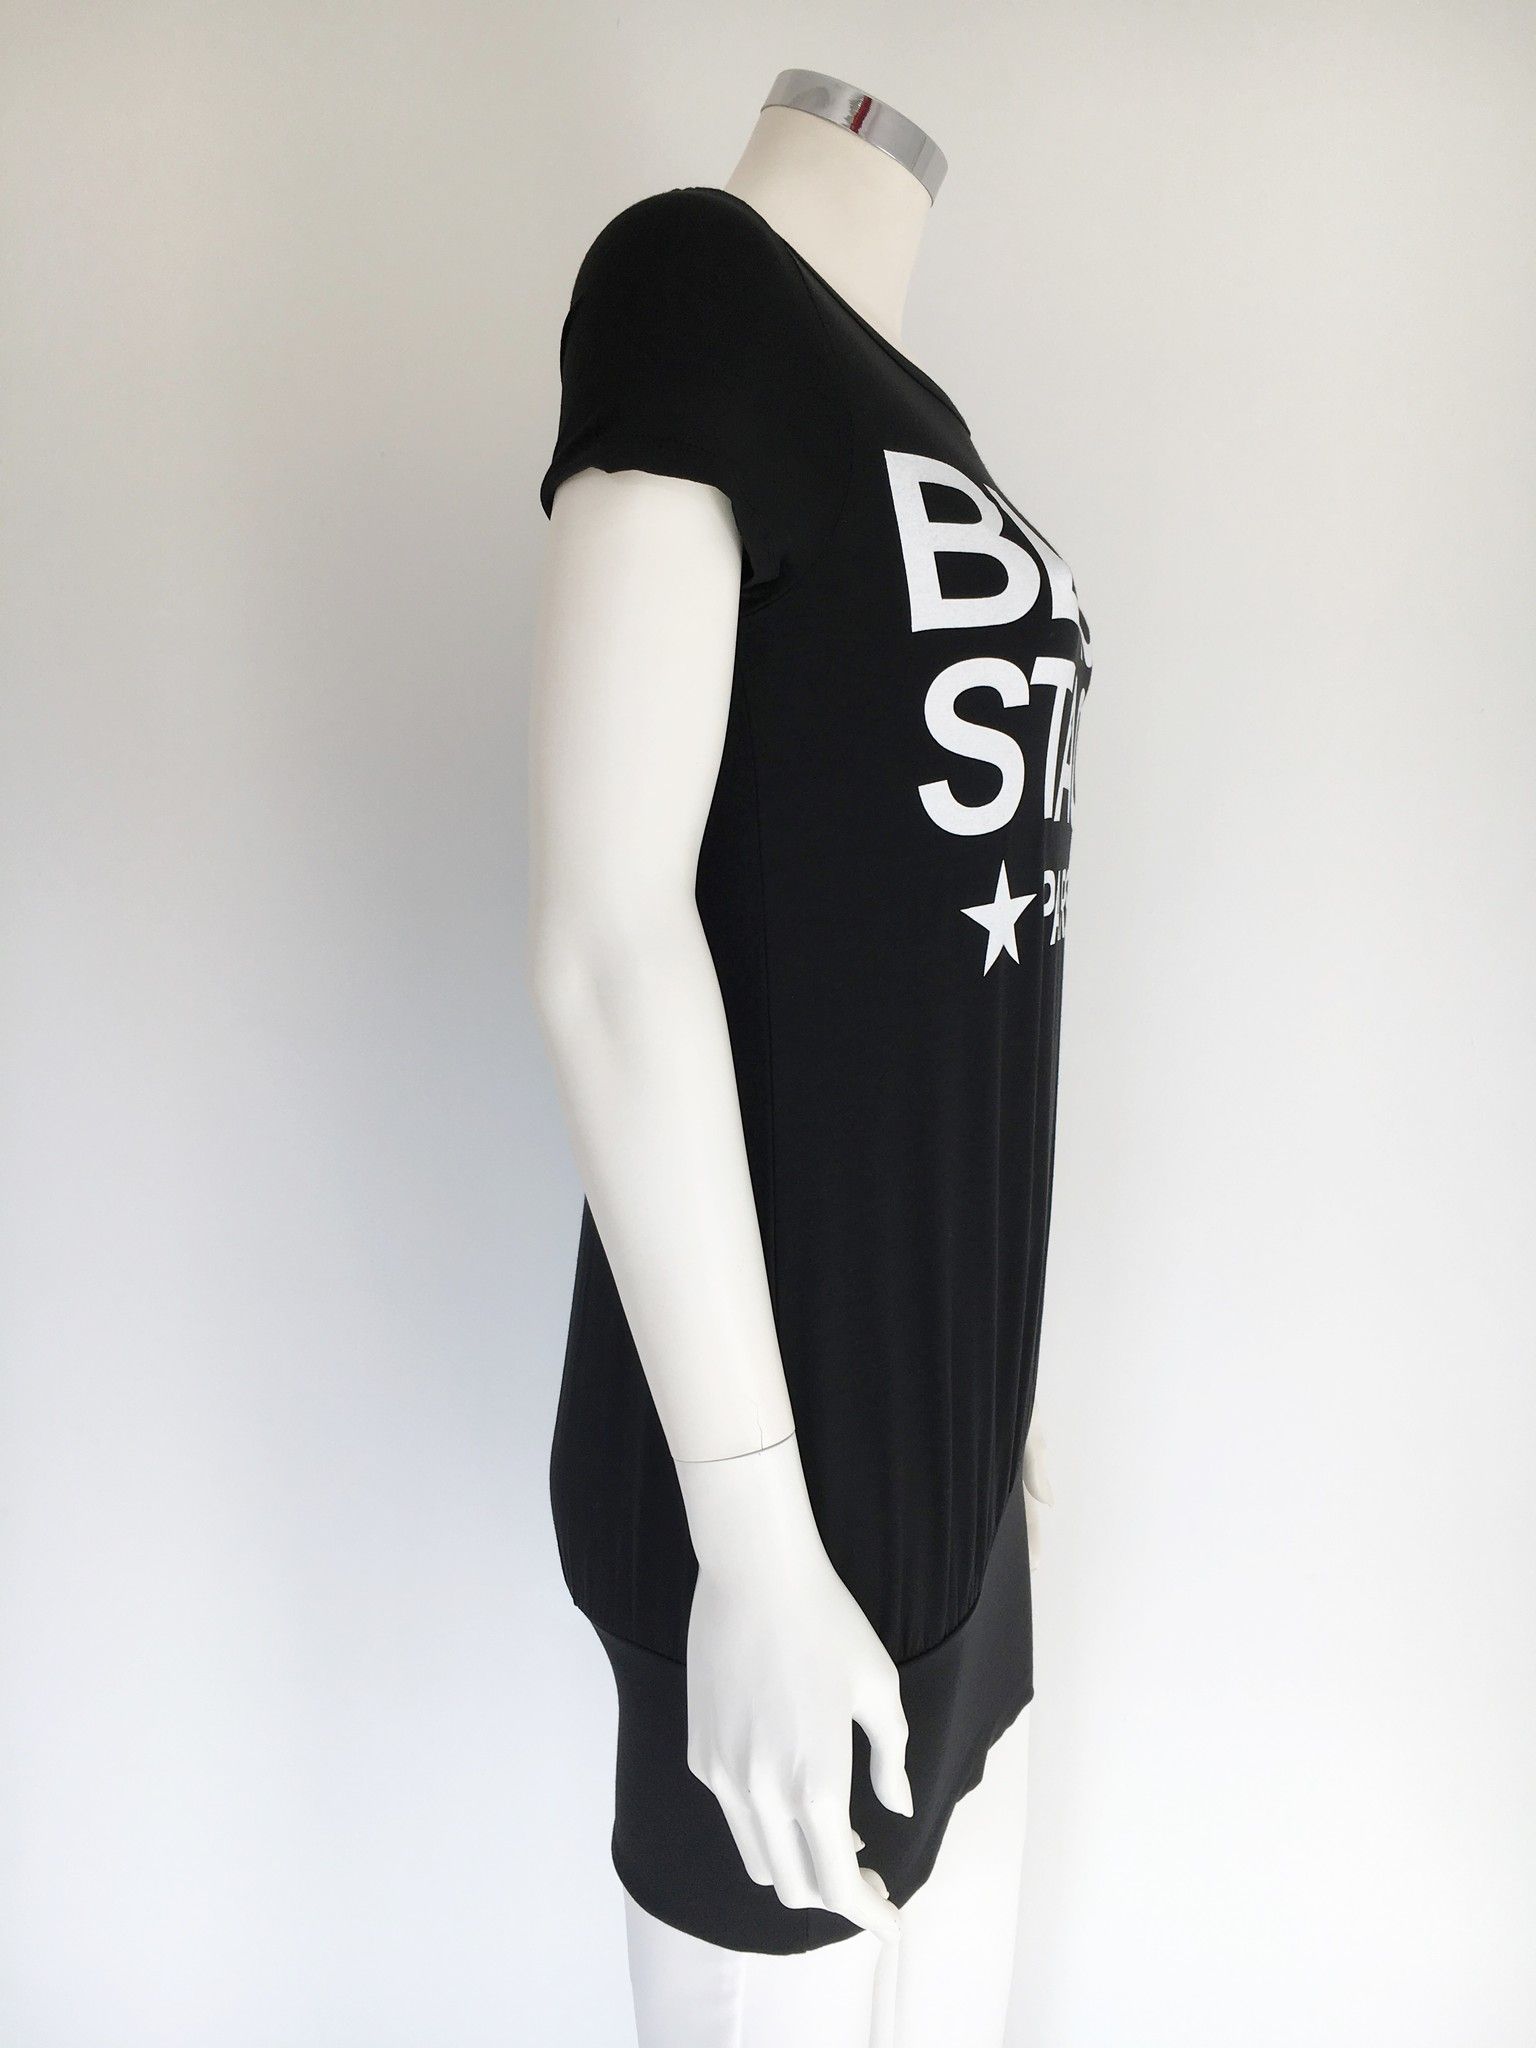 LadyBug Long T-Shirt "Black Stage" Cod.0325